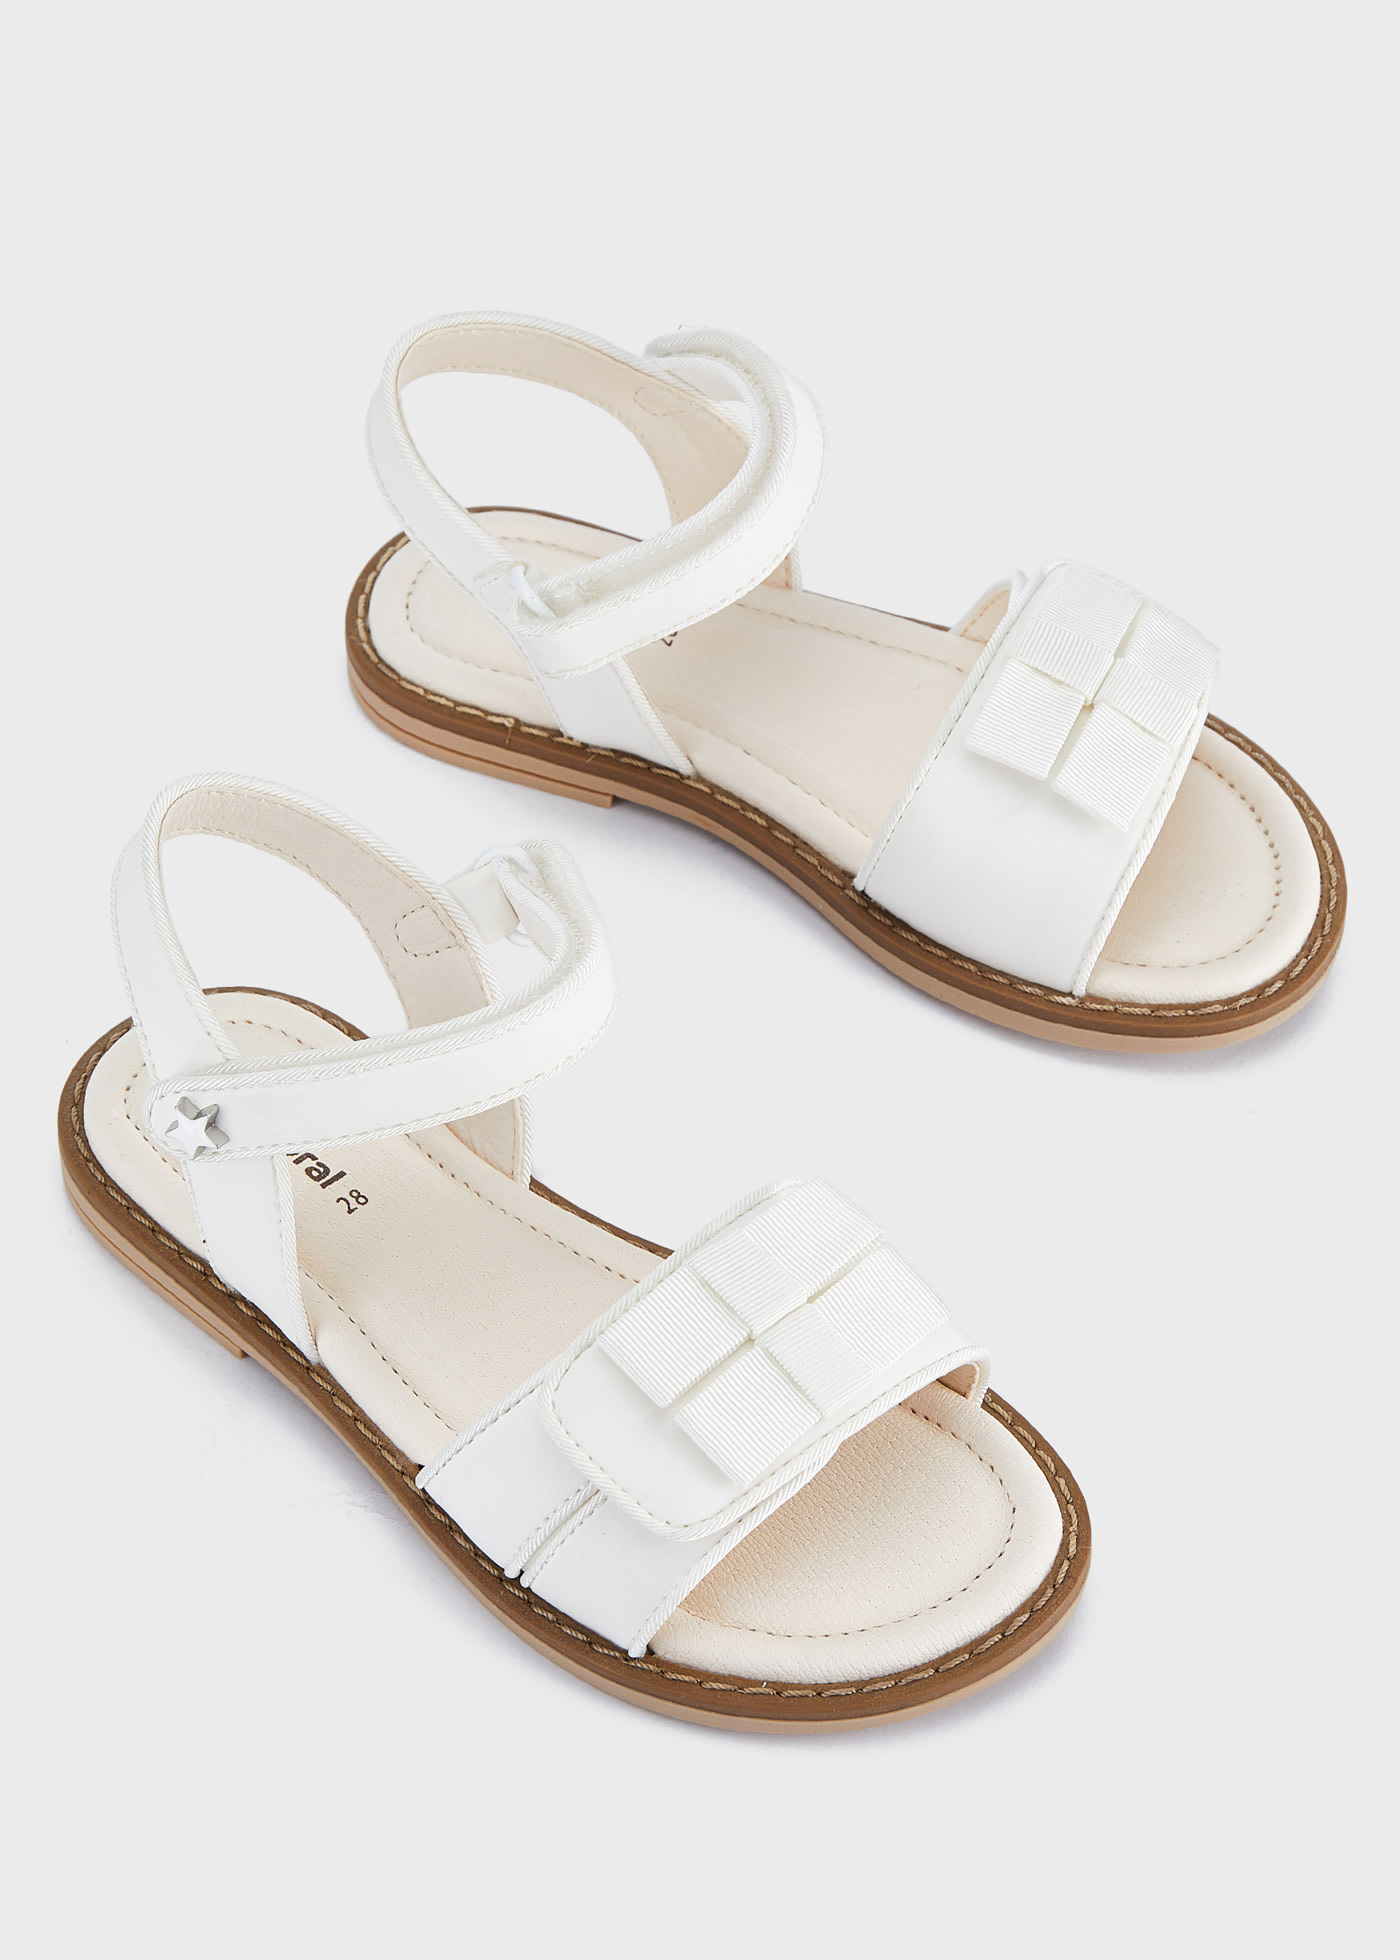 Retro White Kids Sandals - Salt-Water Sandals Shop